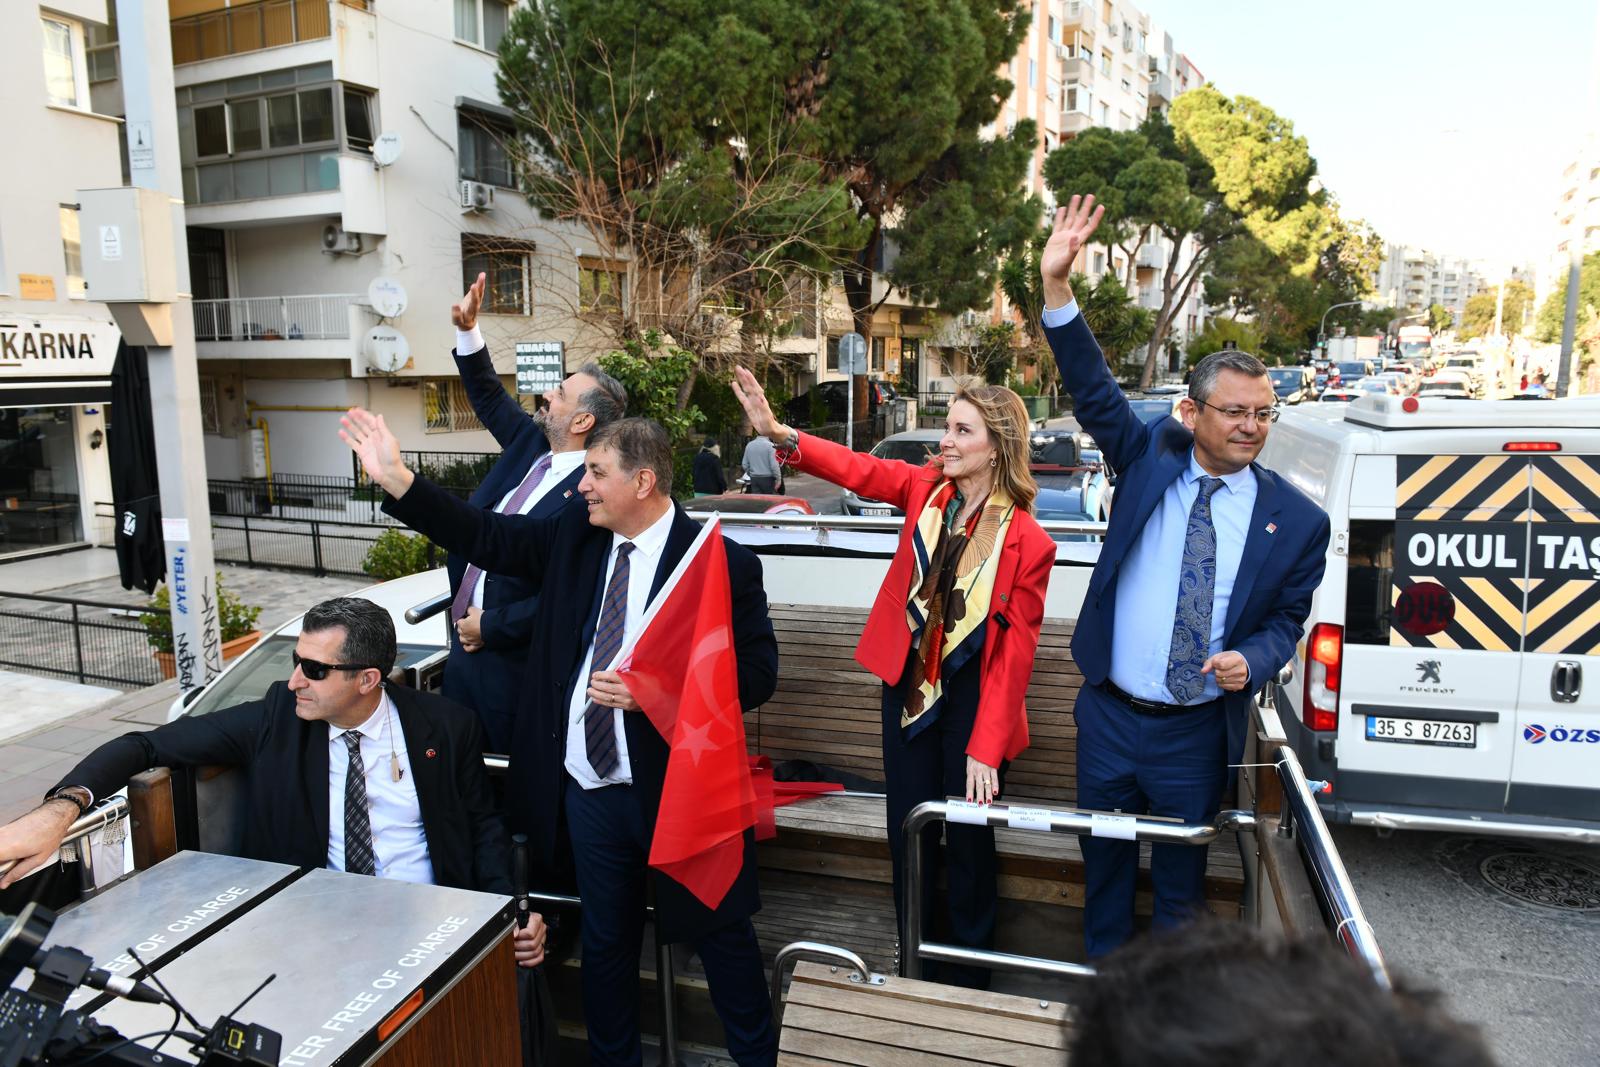 özgür özel CHP Genel Başkanı Özgür Özel ile CHP'nin İzmir Büyükşehir Belediye Başkan Adayı Dr. Cemil Tugay, İzmir'de üstü açık otobüsle yurttaşları selamladı. İzmirliler, Özel ve Tugay'ı sokaklarda Türk bayraklarıyla karşıladı.